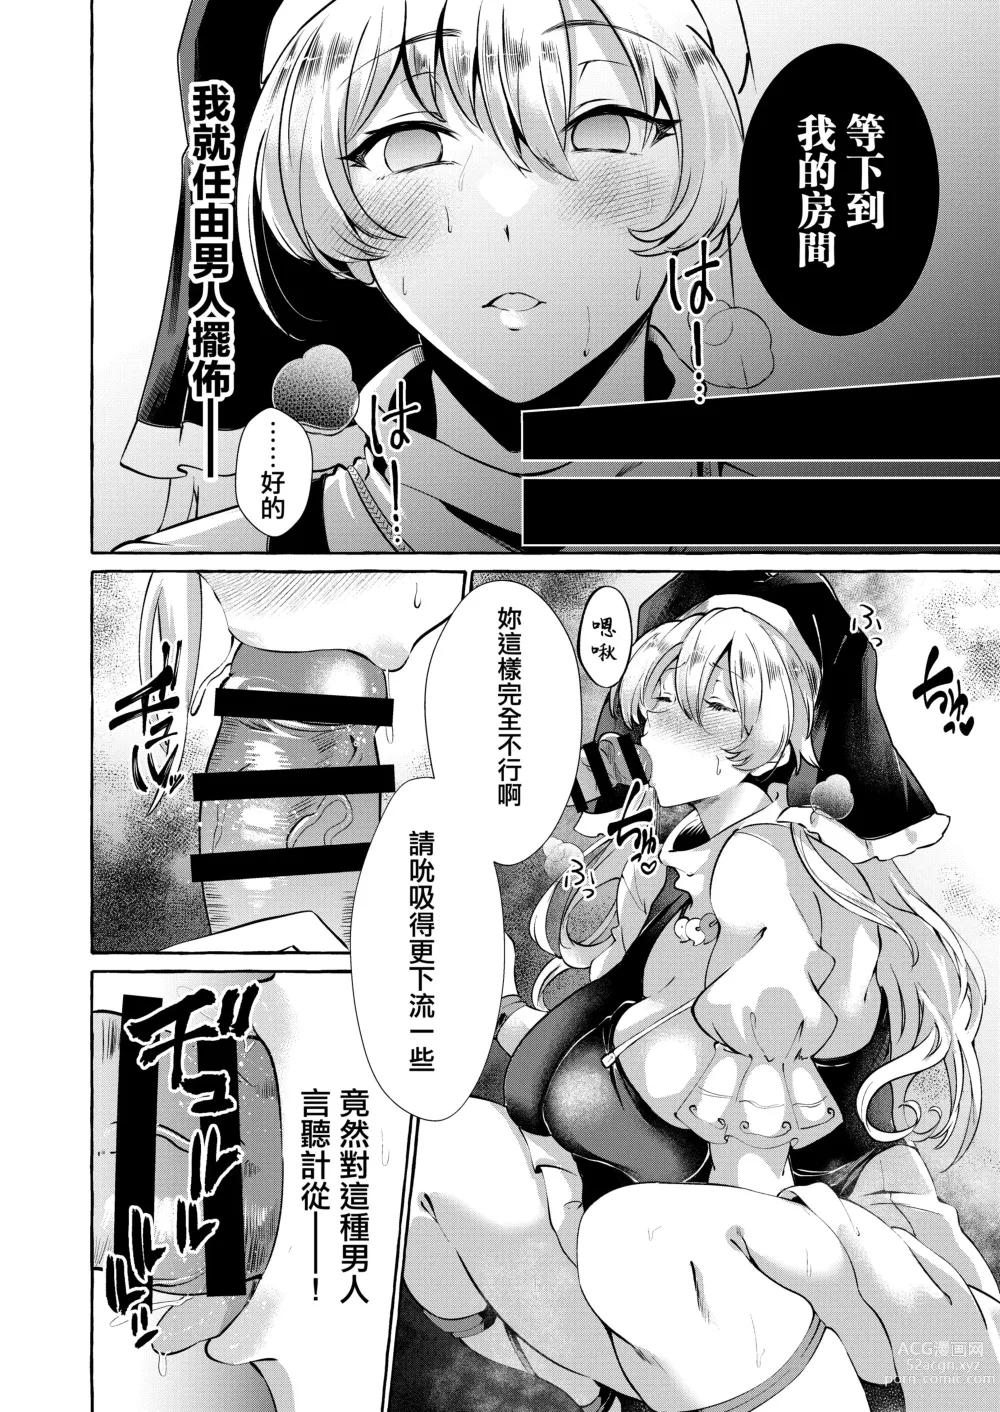 Page 13 of doujinshi 將肢體托付於妄想